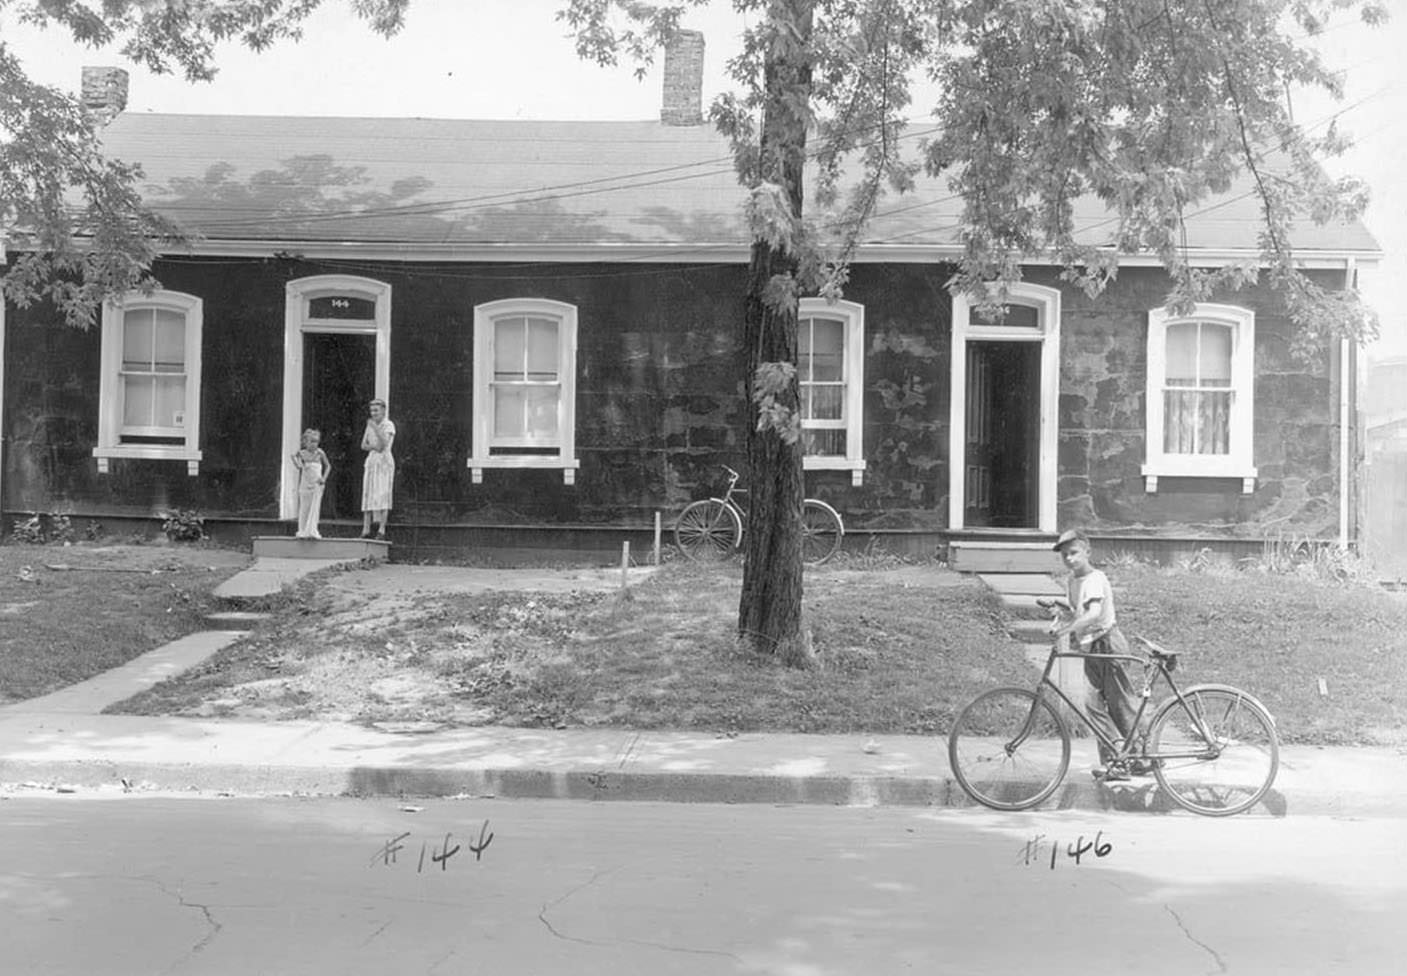 144-46 Oak Street - July 12, 1948